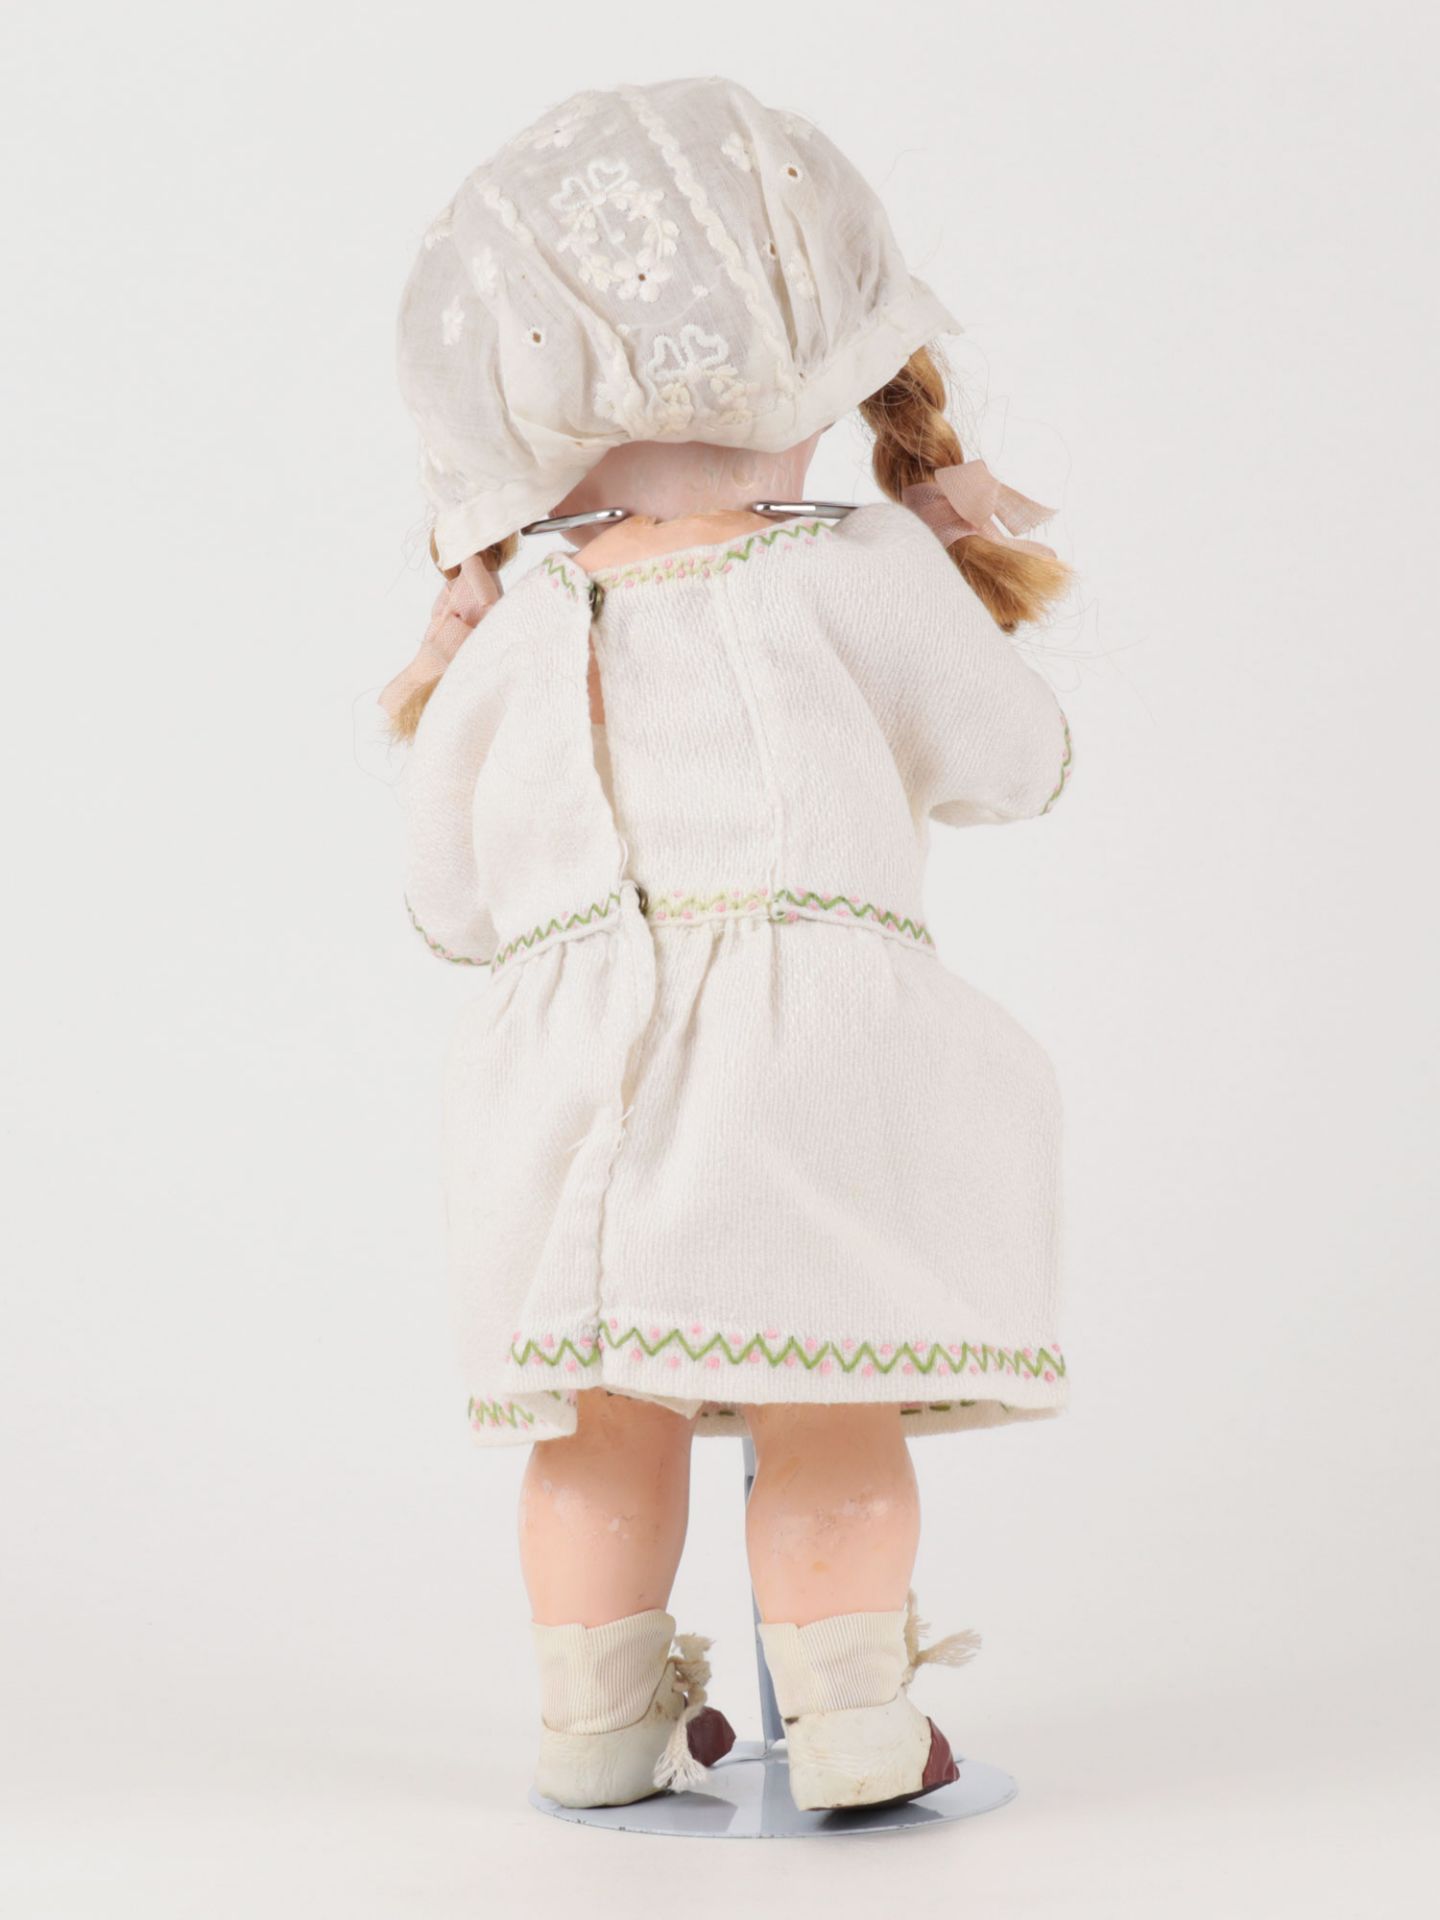 Puppe gem. "971 A.3/0.M, R.G.M.26", Biskuit-Porzellan-Kurbelkopf, blonde Mohairperüc - Image 2 of 14